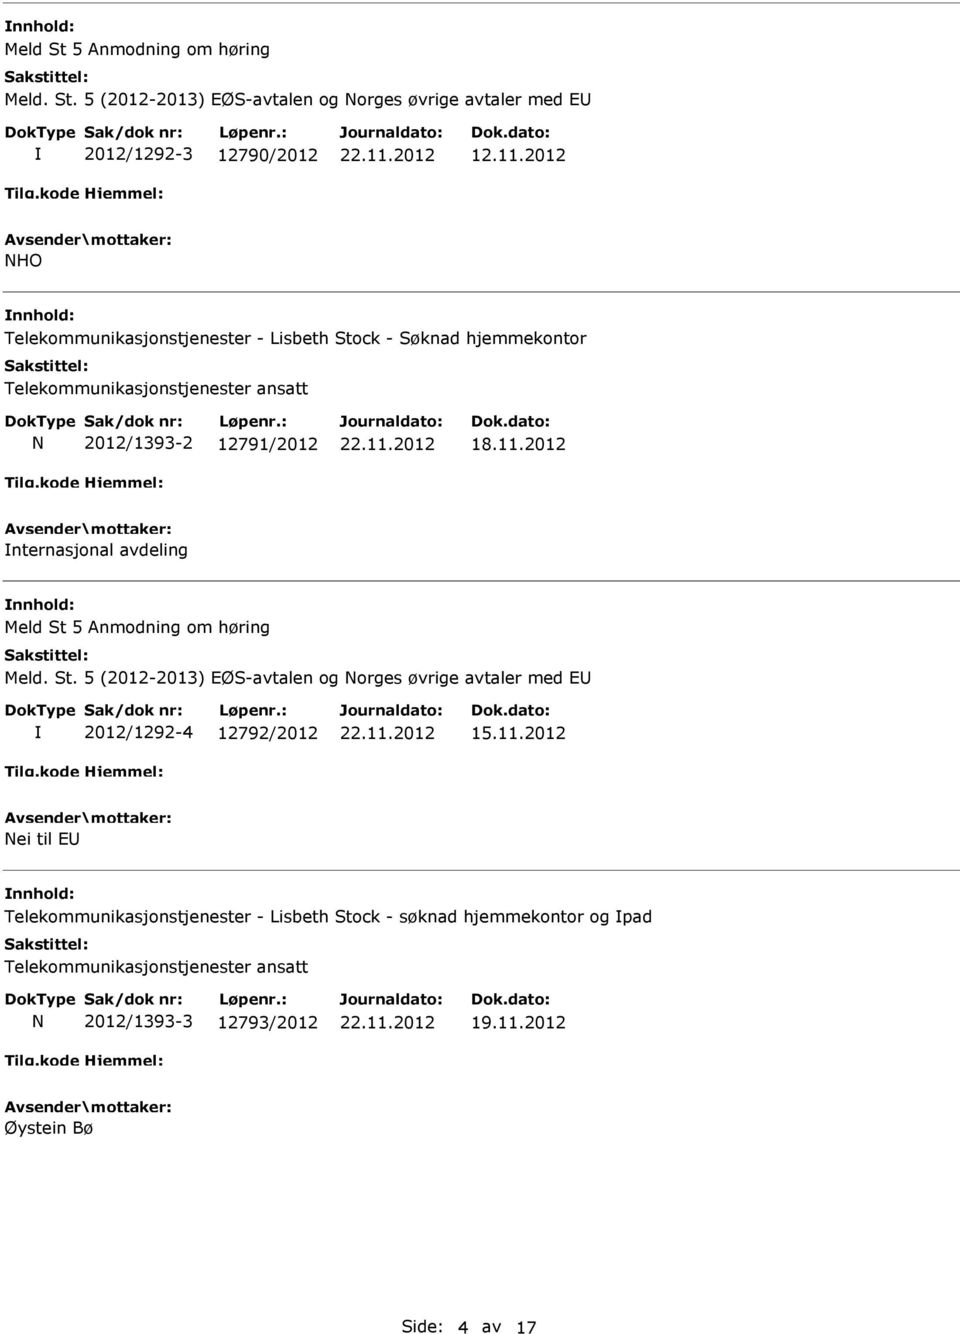 2012 nternasjonal avdeling Meld St 5 Anmodning om høring Meld. St. 5 (2012-2013) EØS-avtalen og Norges øvrige avtaler med E 2012/1292-4 12792/2012 15.